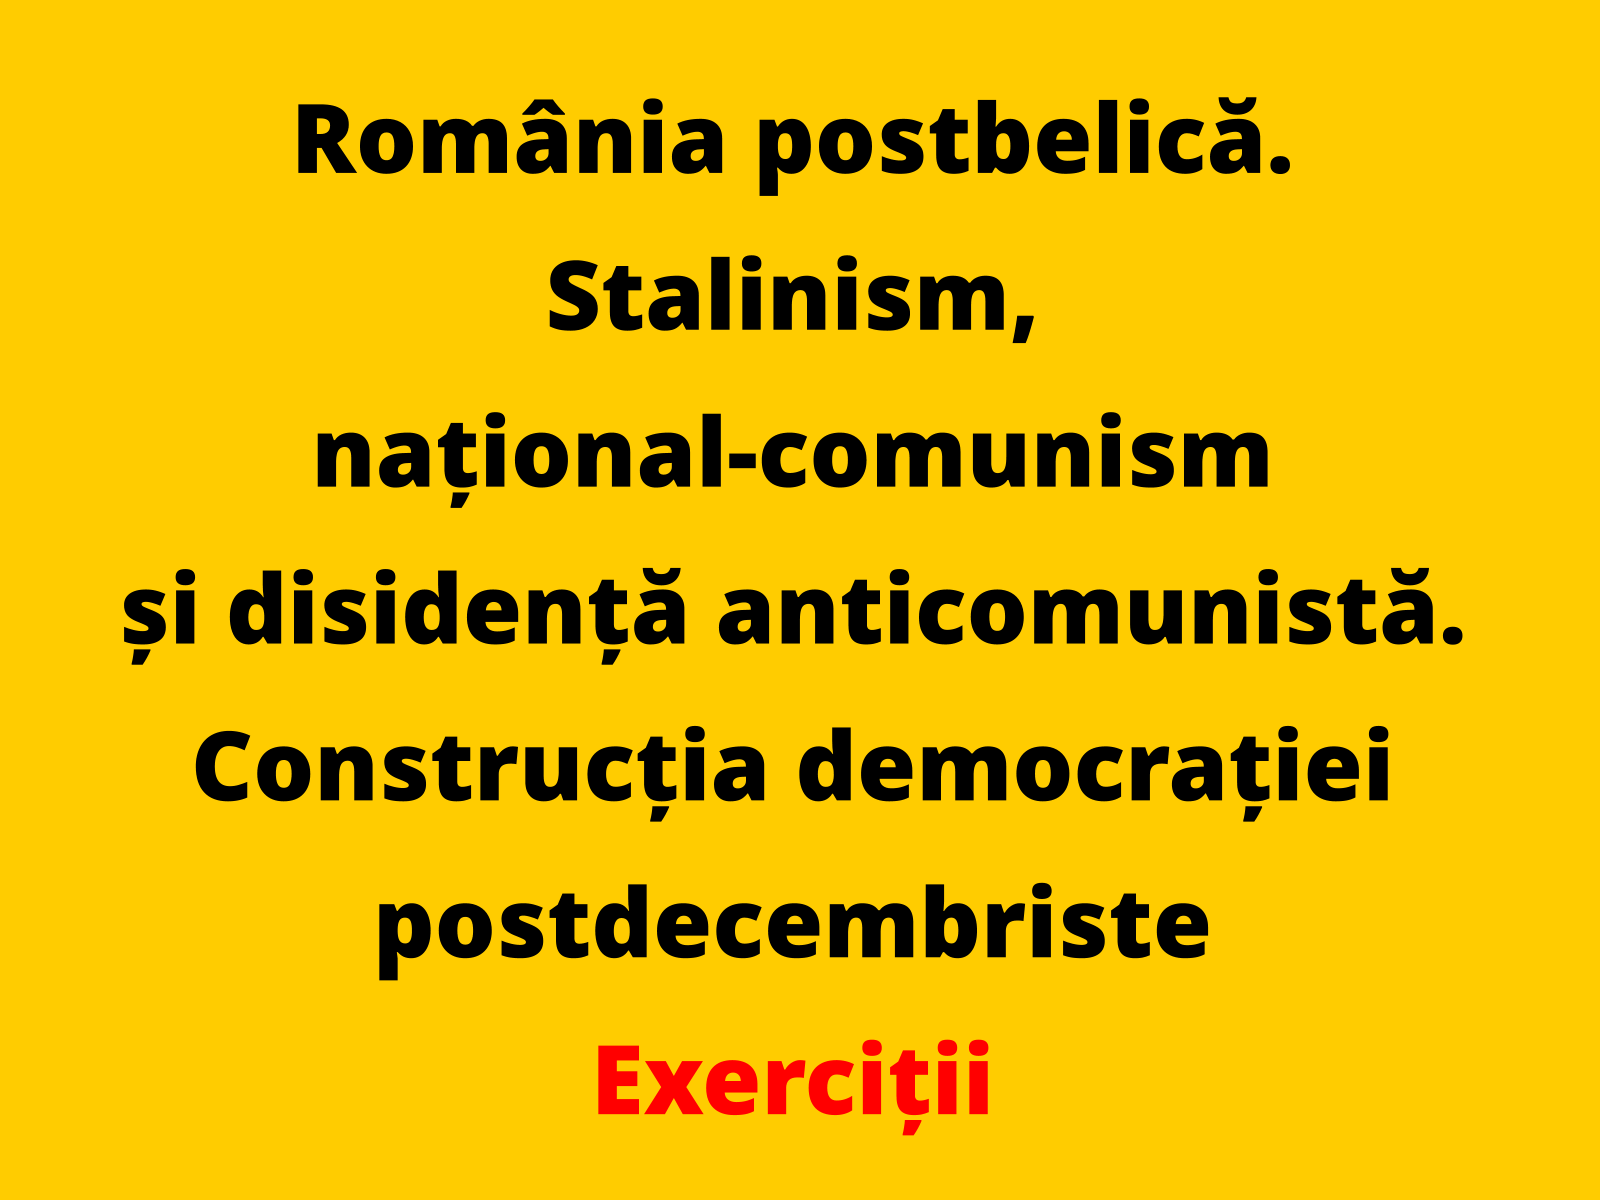 Argumentați, printr-un fapt istoric relevant, afirmația conform căreia România participă la relațiile internaționale, în perioada stalinismului